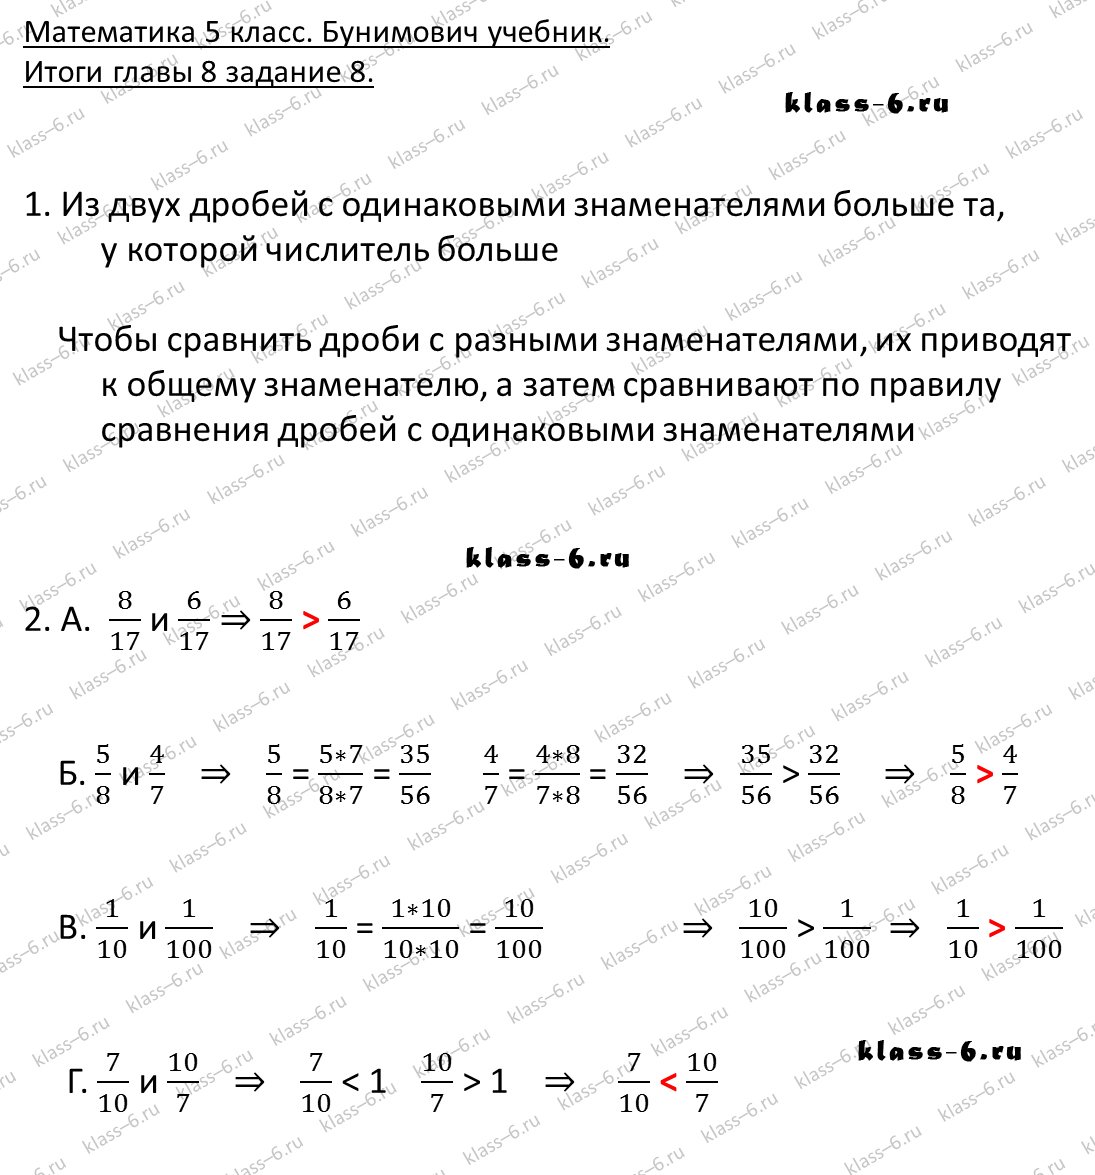 решебник и гдз по математике учебник Бунимович 5 класс итоги главы 8-8